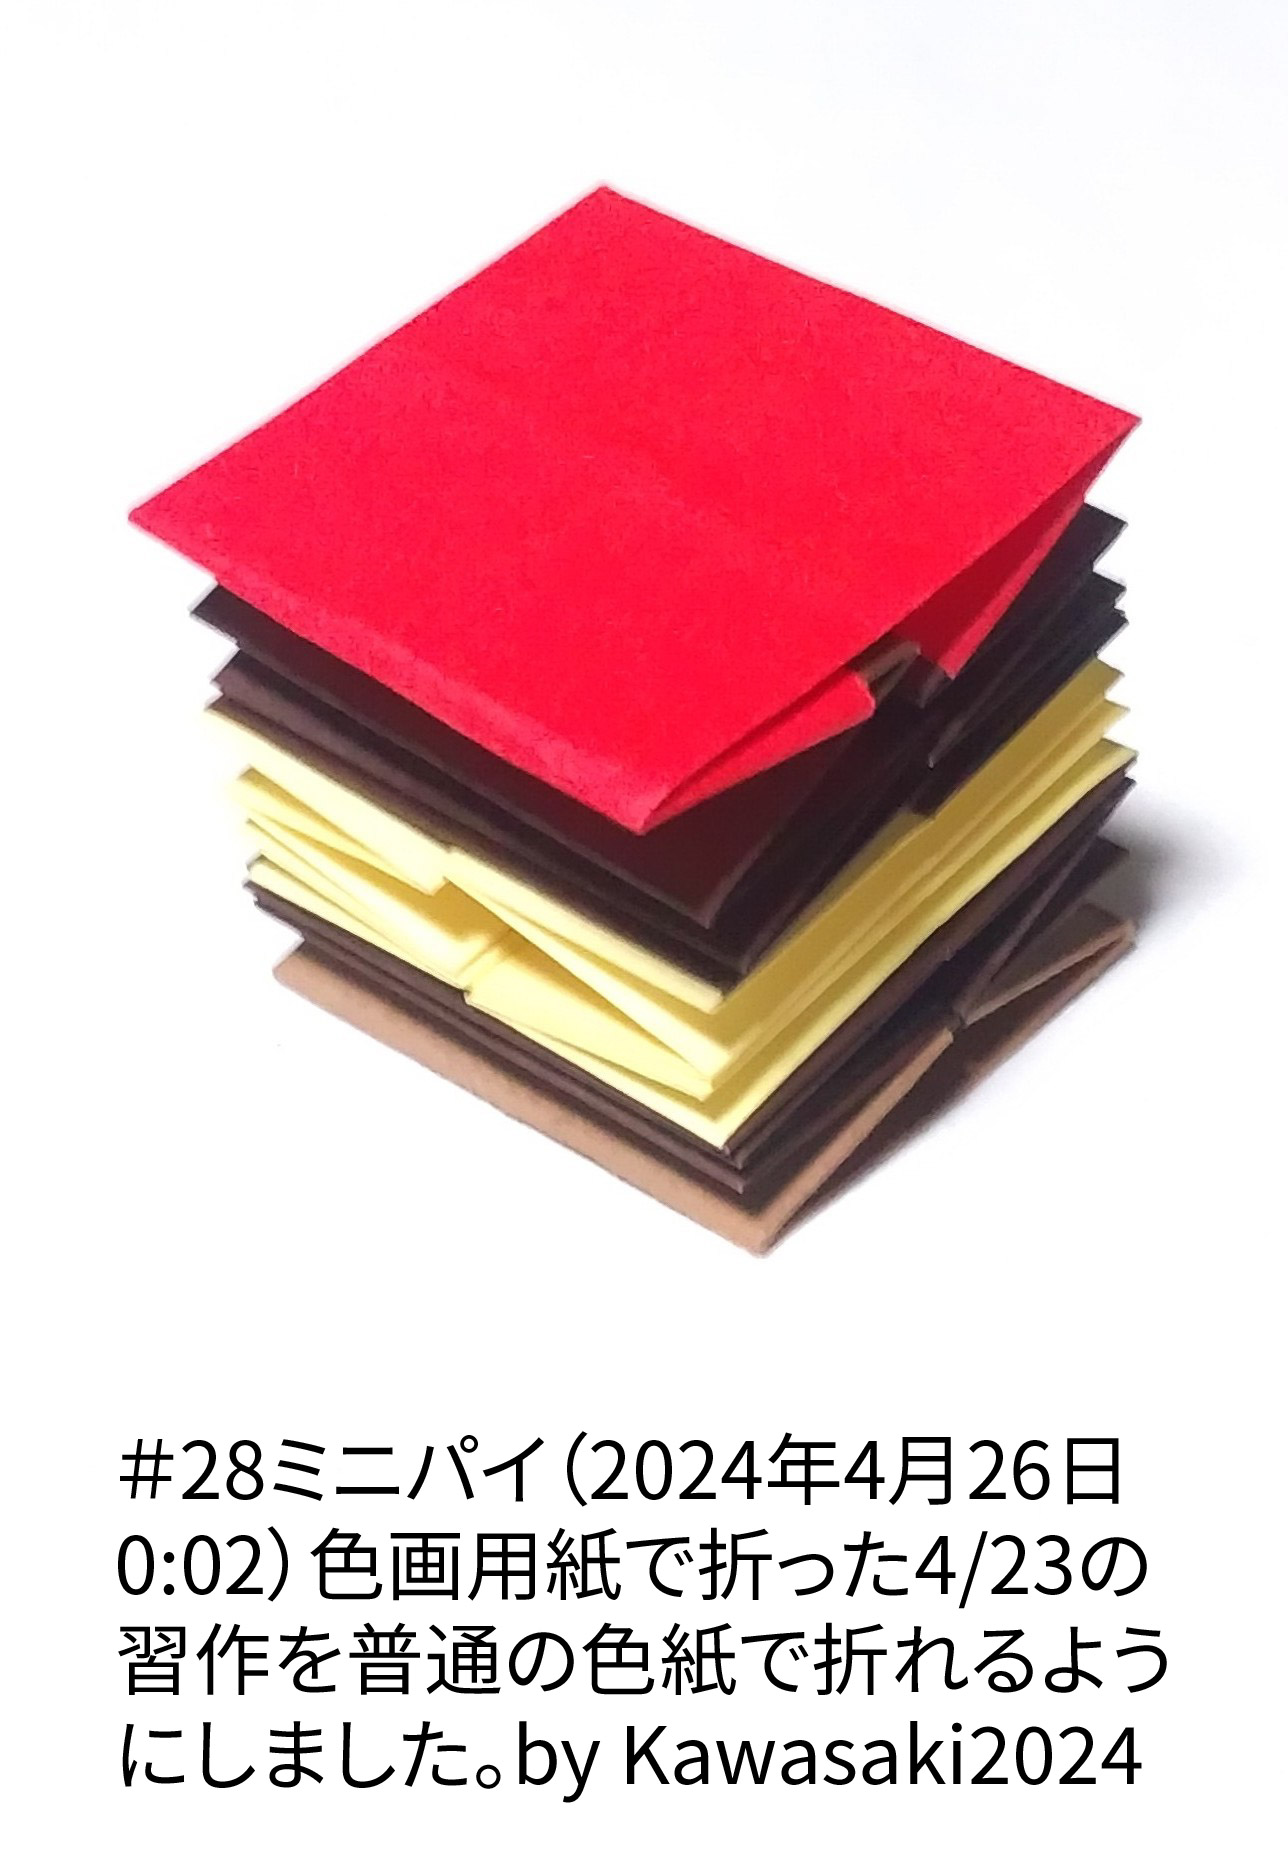 2024/04/26(Fri) 01:10「＃28ミニパイ（2024年4月26日0:02）」川崎敏和 T.Kawasaki
（創作者 Author：川崎敏和 T.Kawasaki,　製作者 Folder：川崎敏和 T.Kawasaki ,　出典 Source：2024年川崎敏和折り紙キット＃28）
 色画用紙で折った4/23の習作を普通の色紙で折れるようにしました。by Kawasaki2024